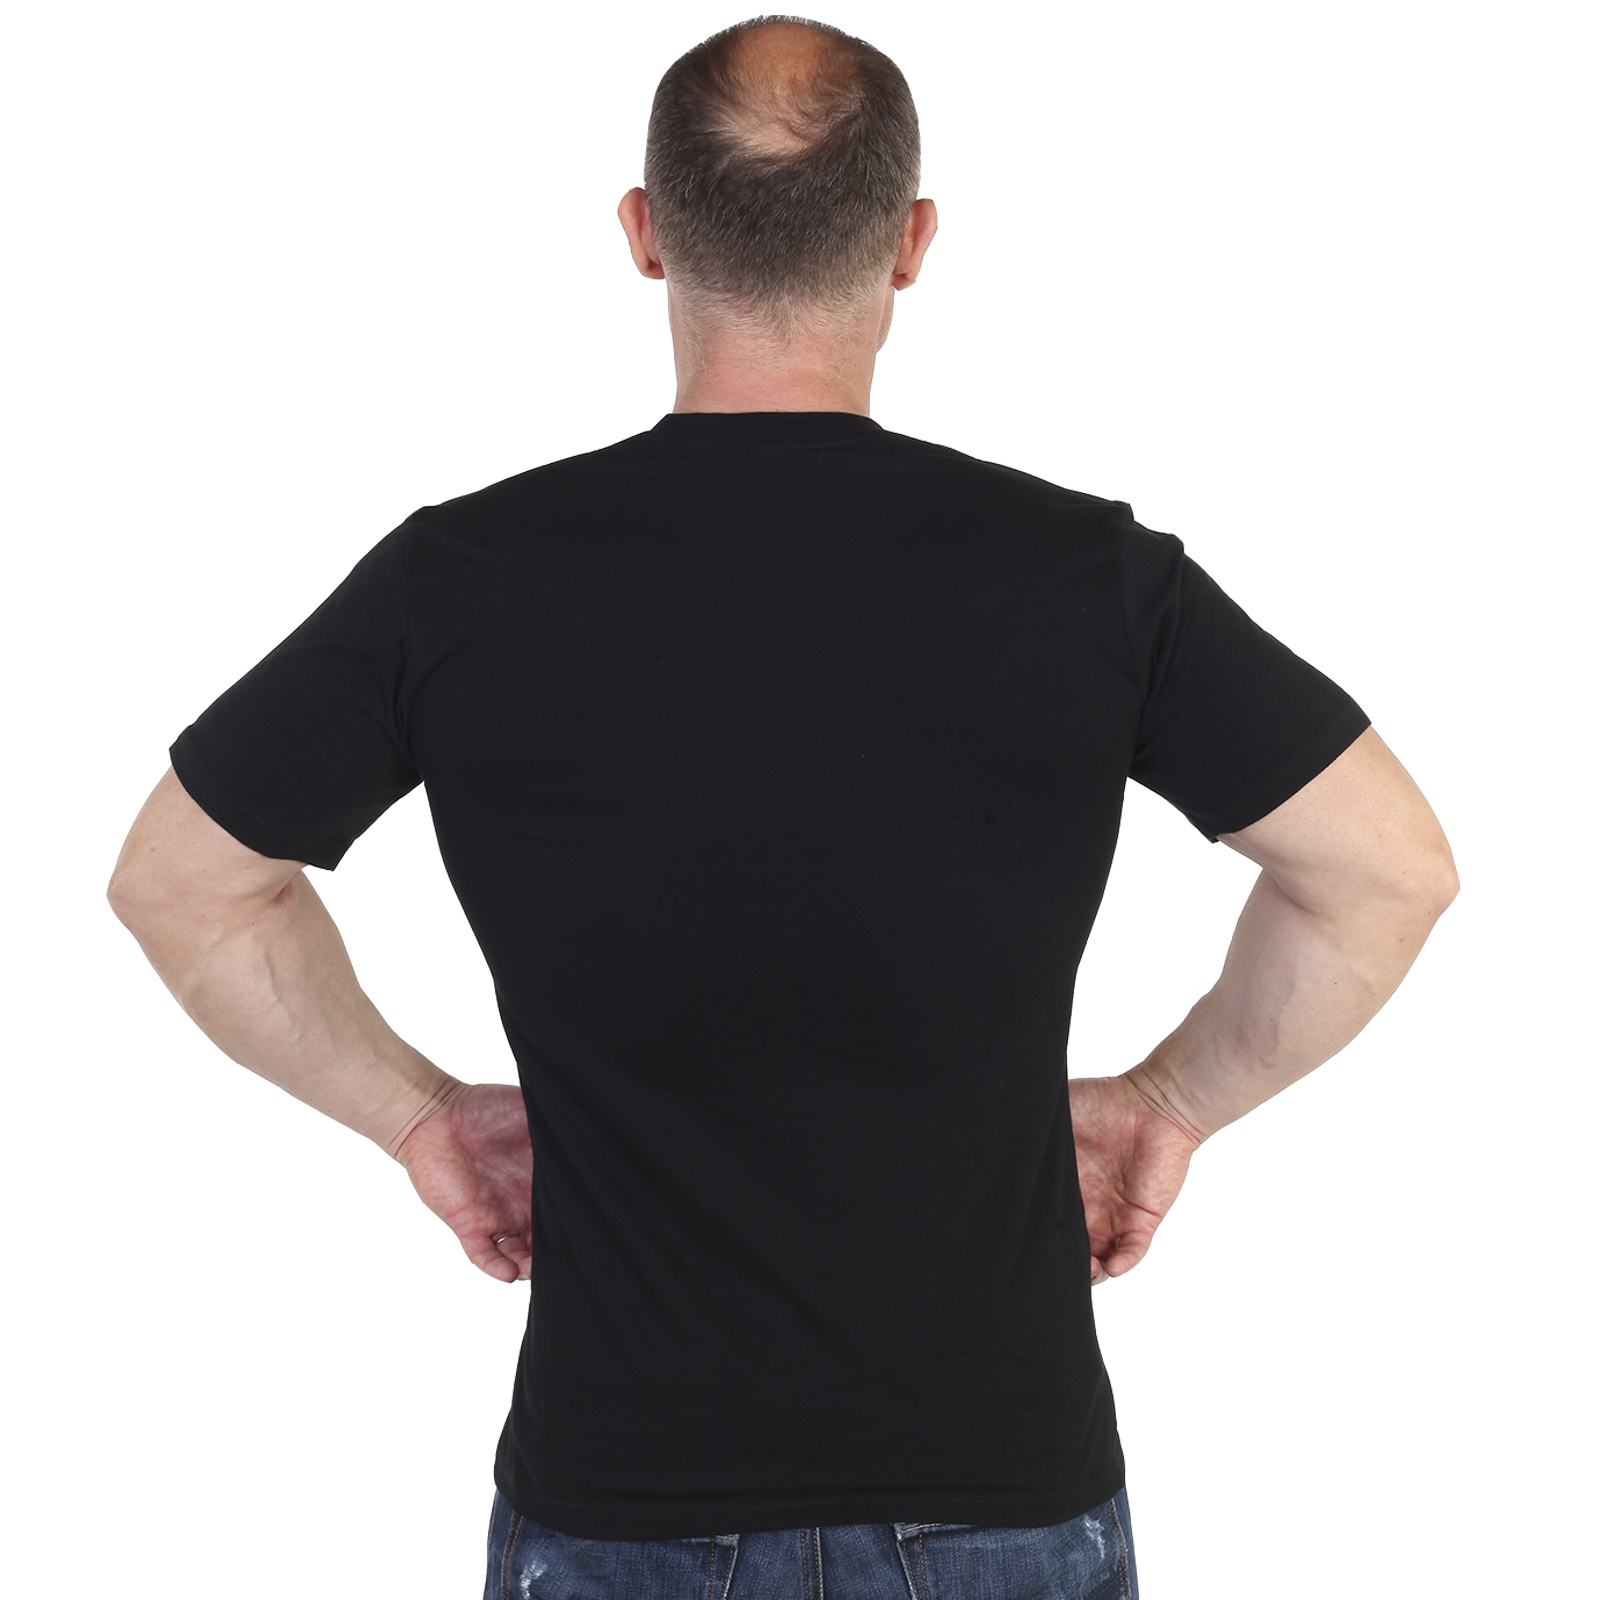 Недорогие мужские футболки от интернет магазина Военпро 